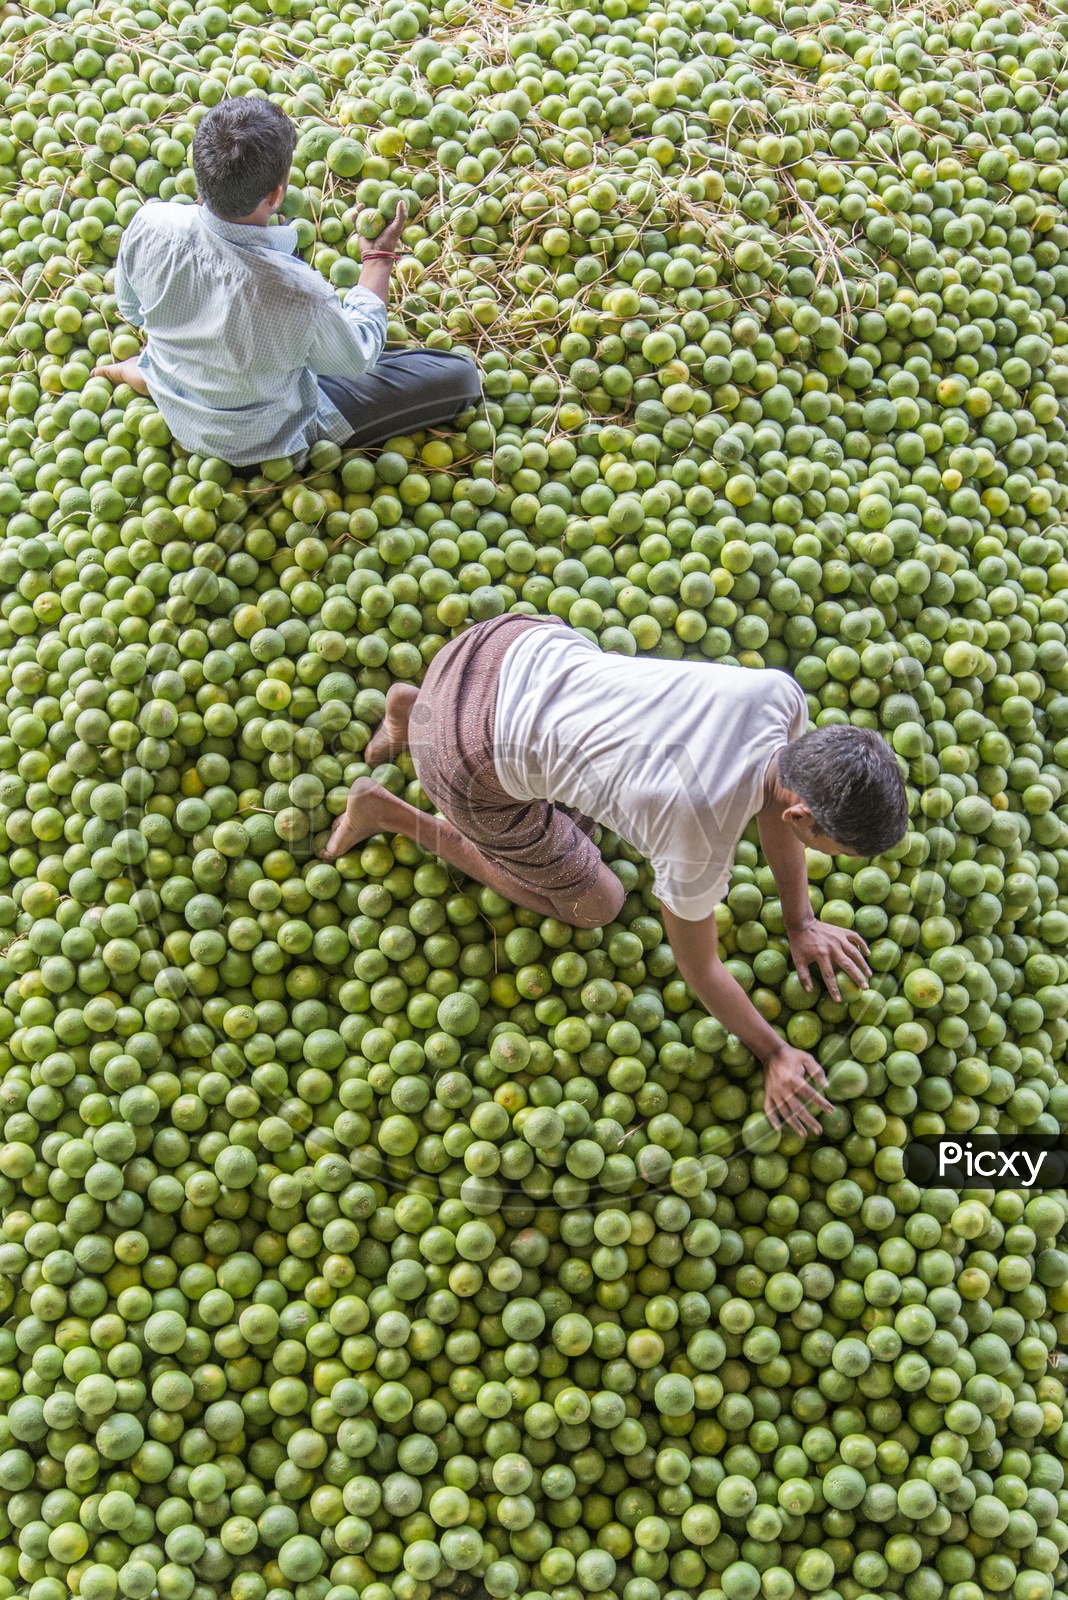 Kothapet Fruit Market, Hyderabad